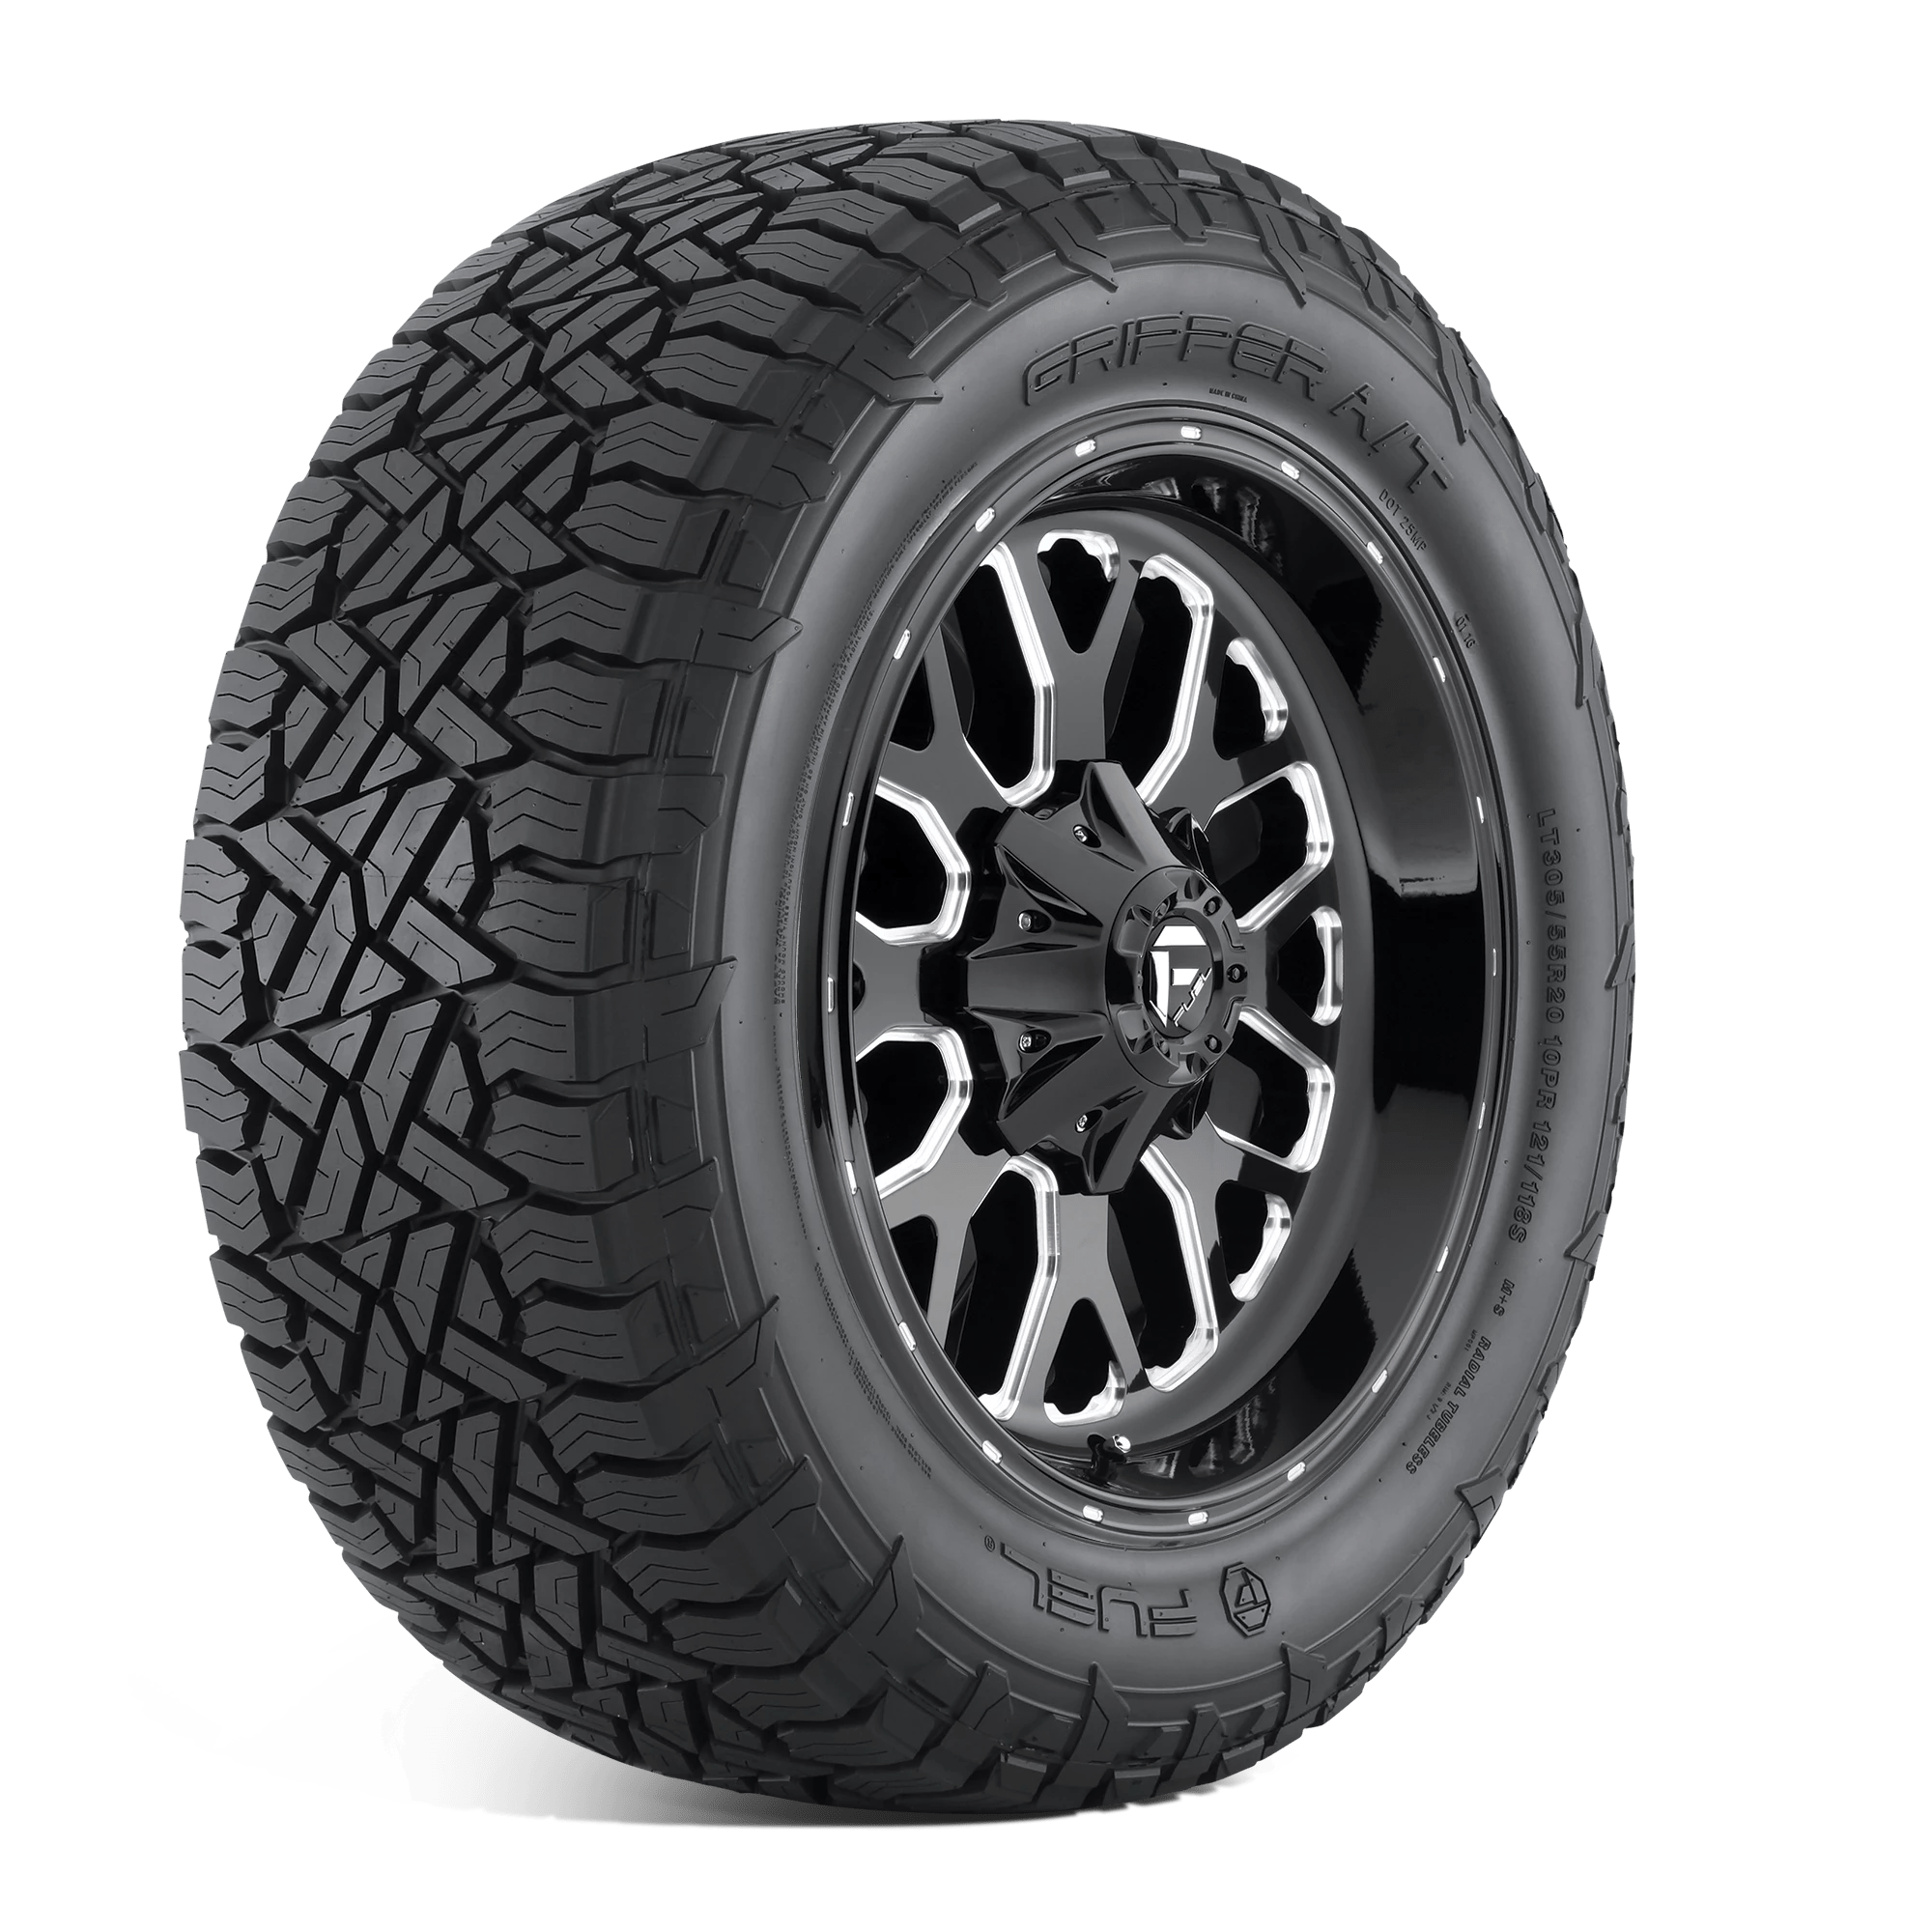 FUEL GRIPPER AT 265/50R20 (30.5X10.4R 20) Tires